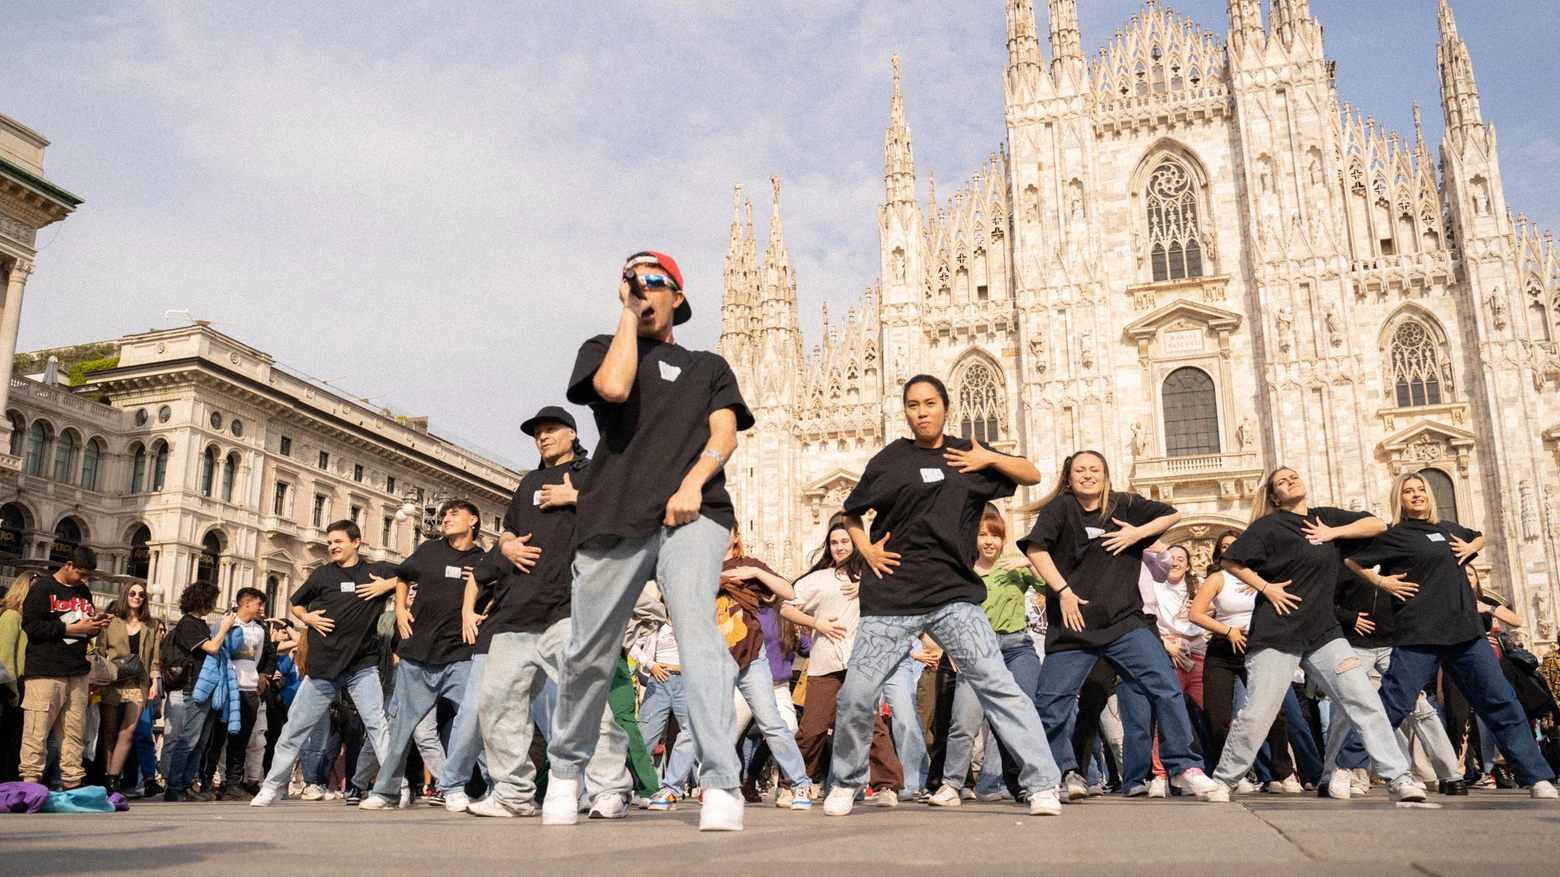 Federico Baroni, il flash mob con 50 ballerini invade Milano: è “Panico”